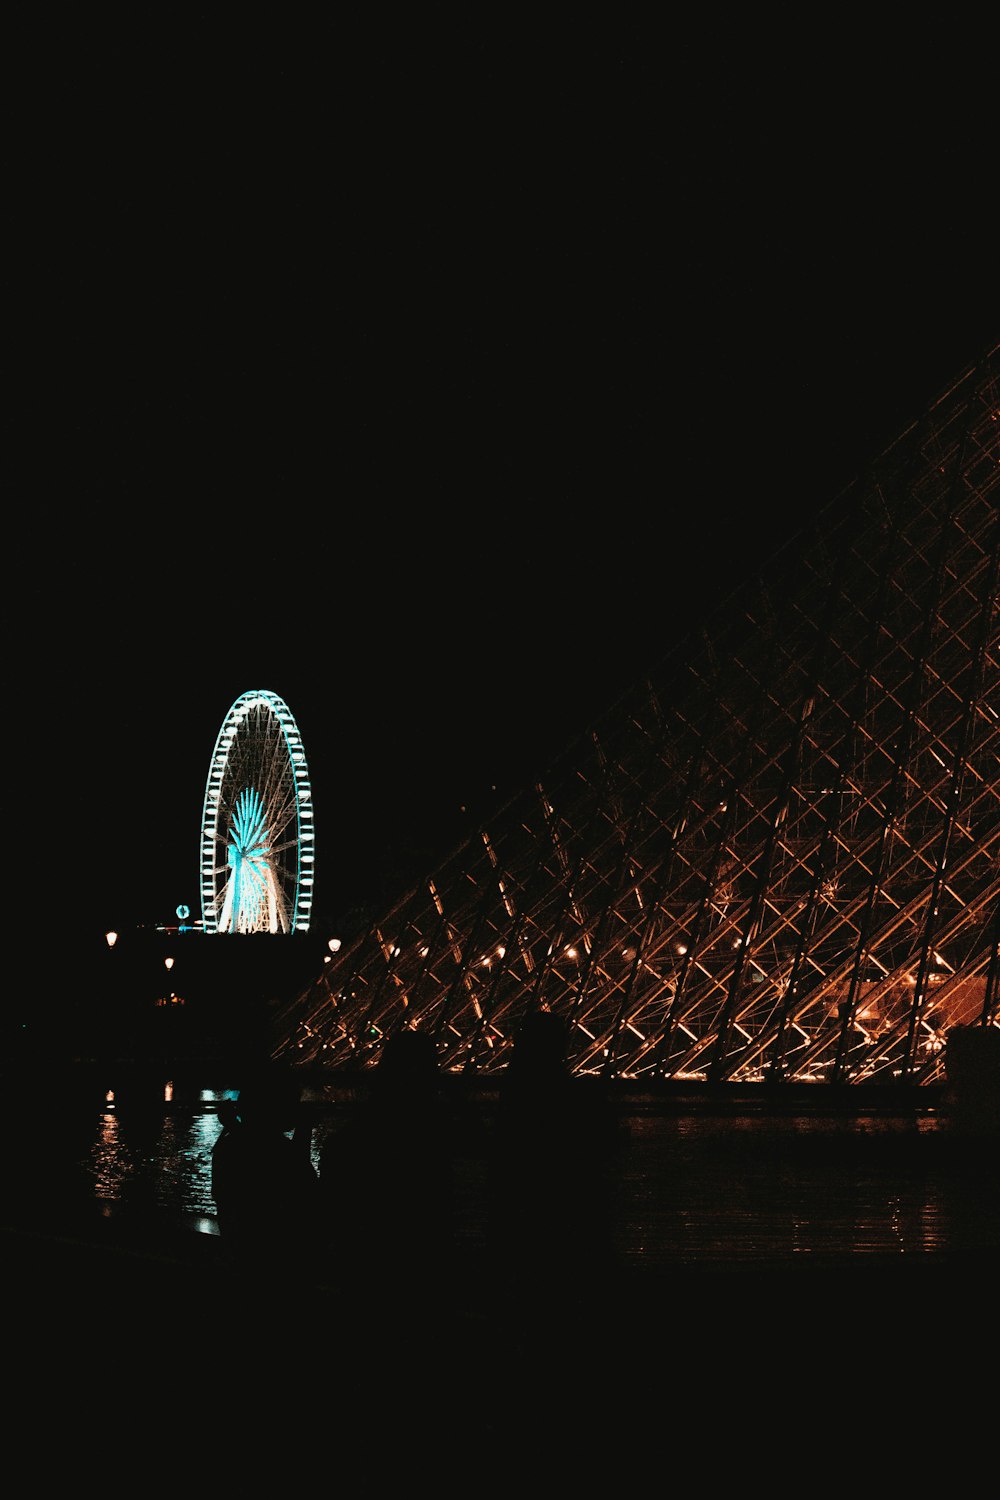 Museum in der Nähe des Vergnügungsparks während der Nacht